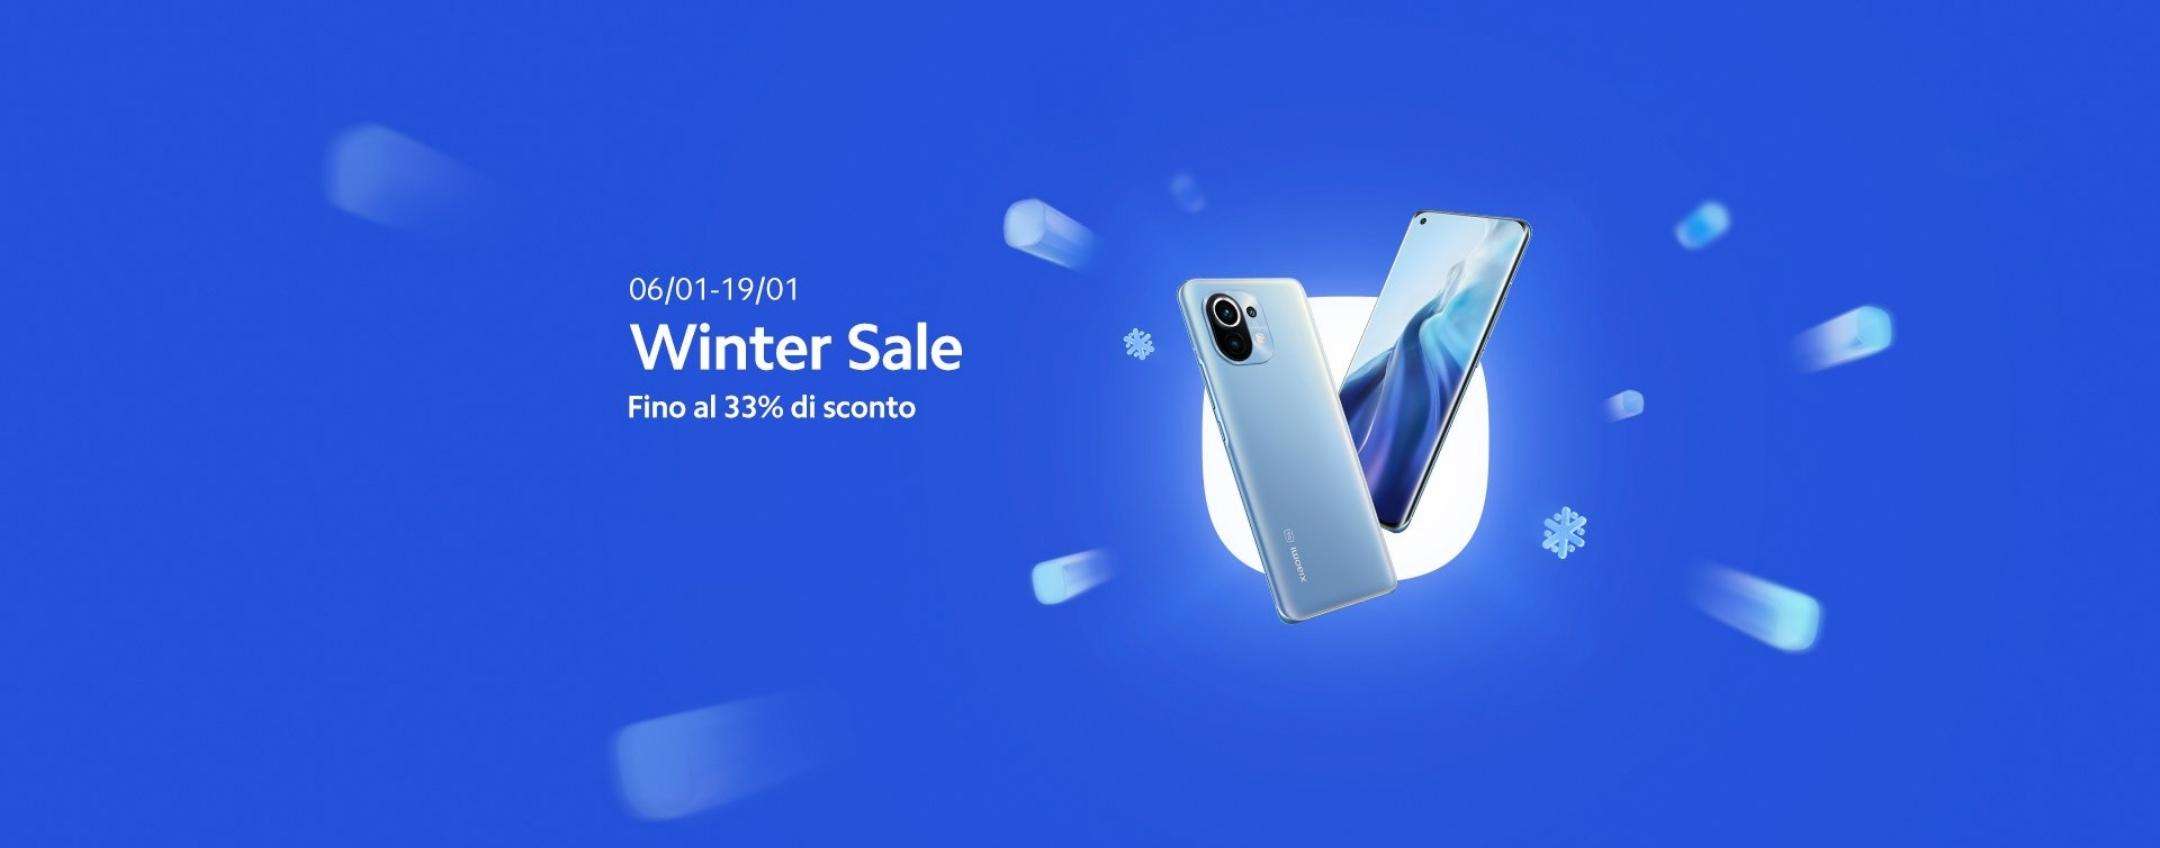 Xiaomi Winter Sale: il primo round di sconti pazzeschi è iniziato